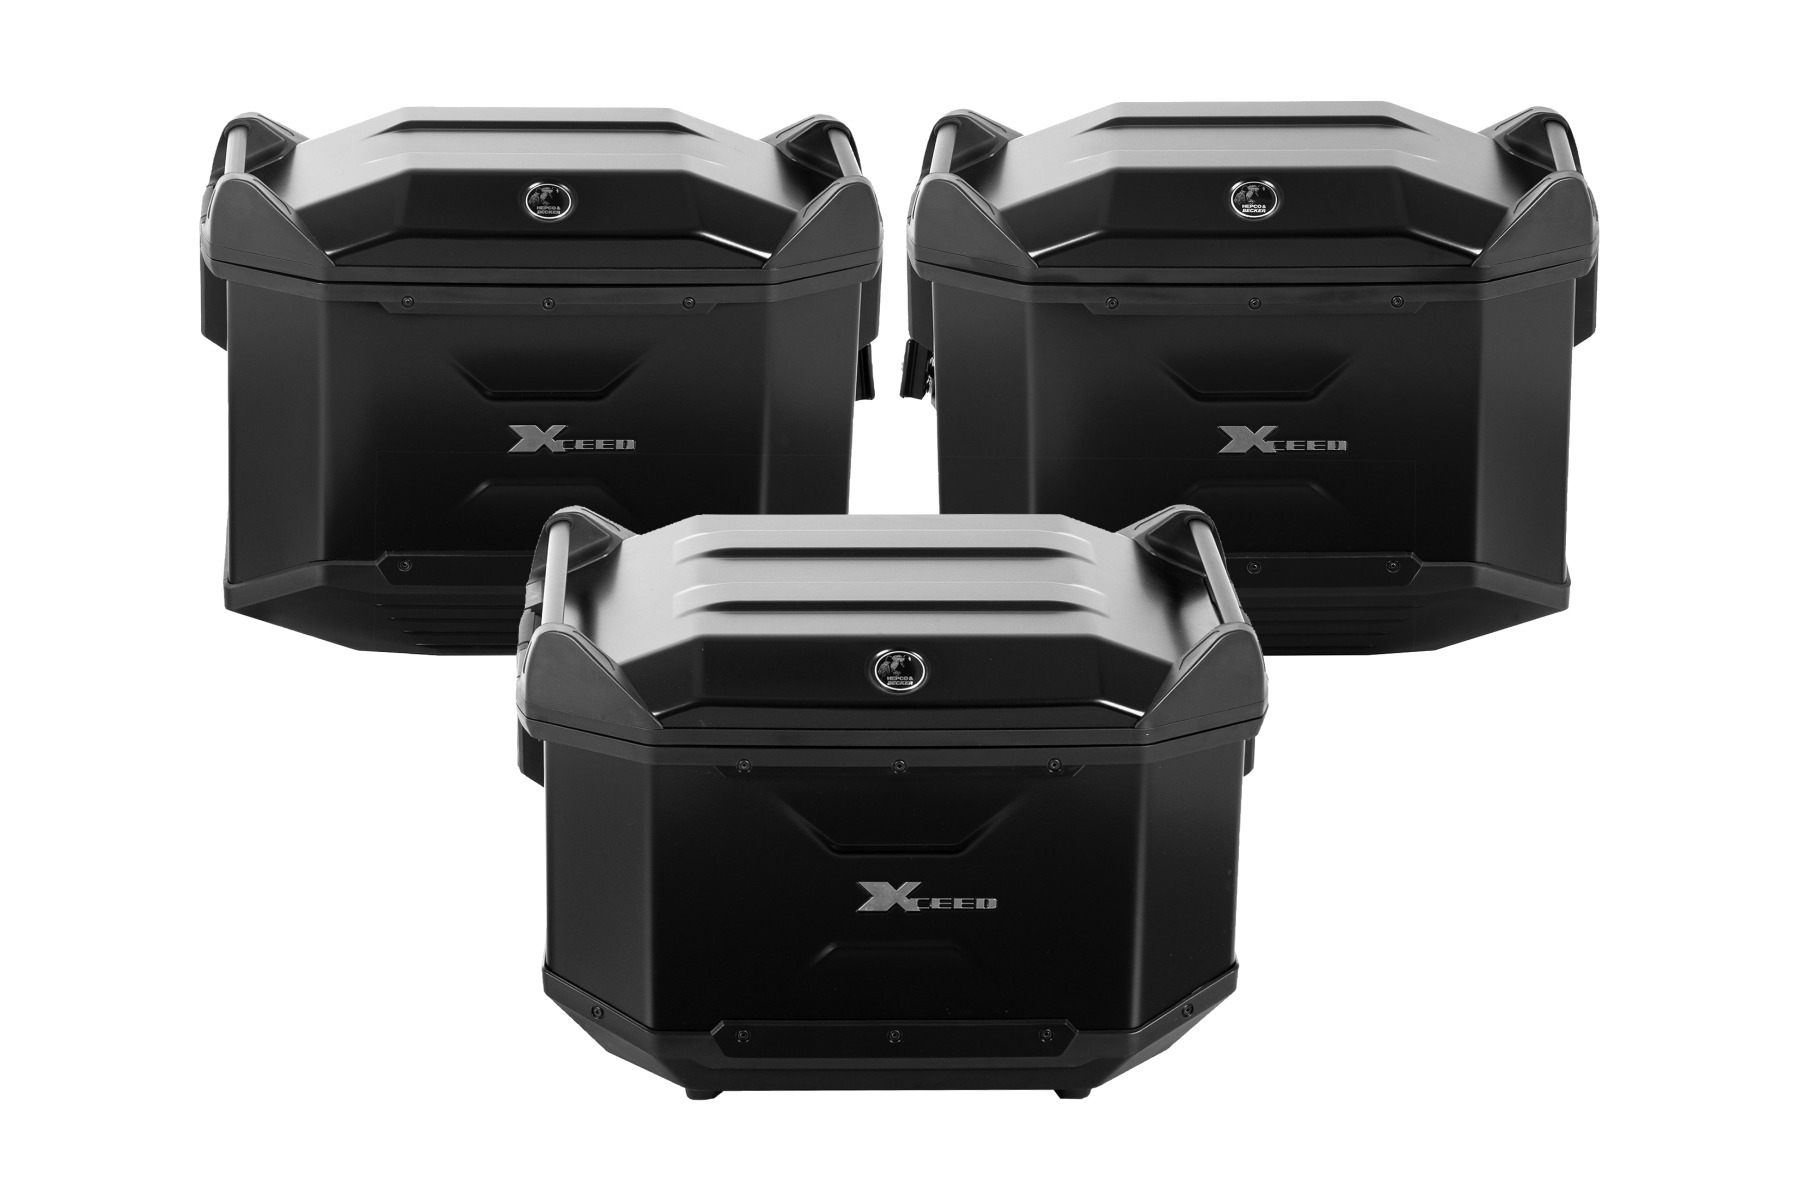 ヘプコアンドベッカー XCEED 3BOXセット ブラック|ロングツアラーの強い味方！ハードケース最高峰と名高い「ヘプコアンドベッカー XCEED 3BOXセット」の魅力を紹介